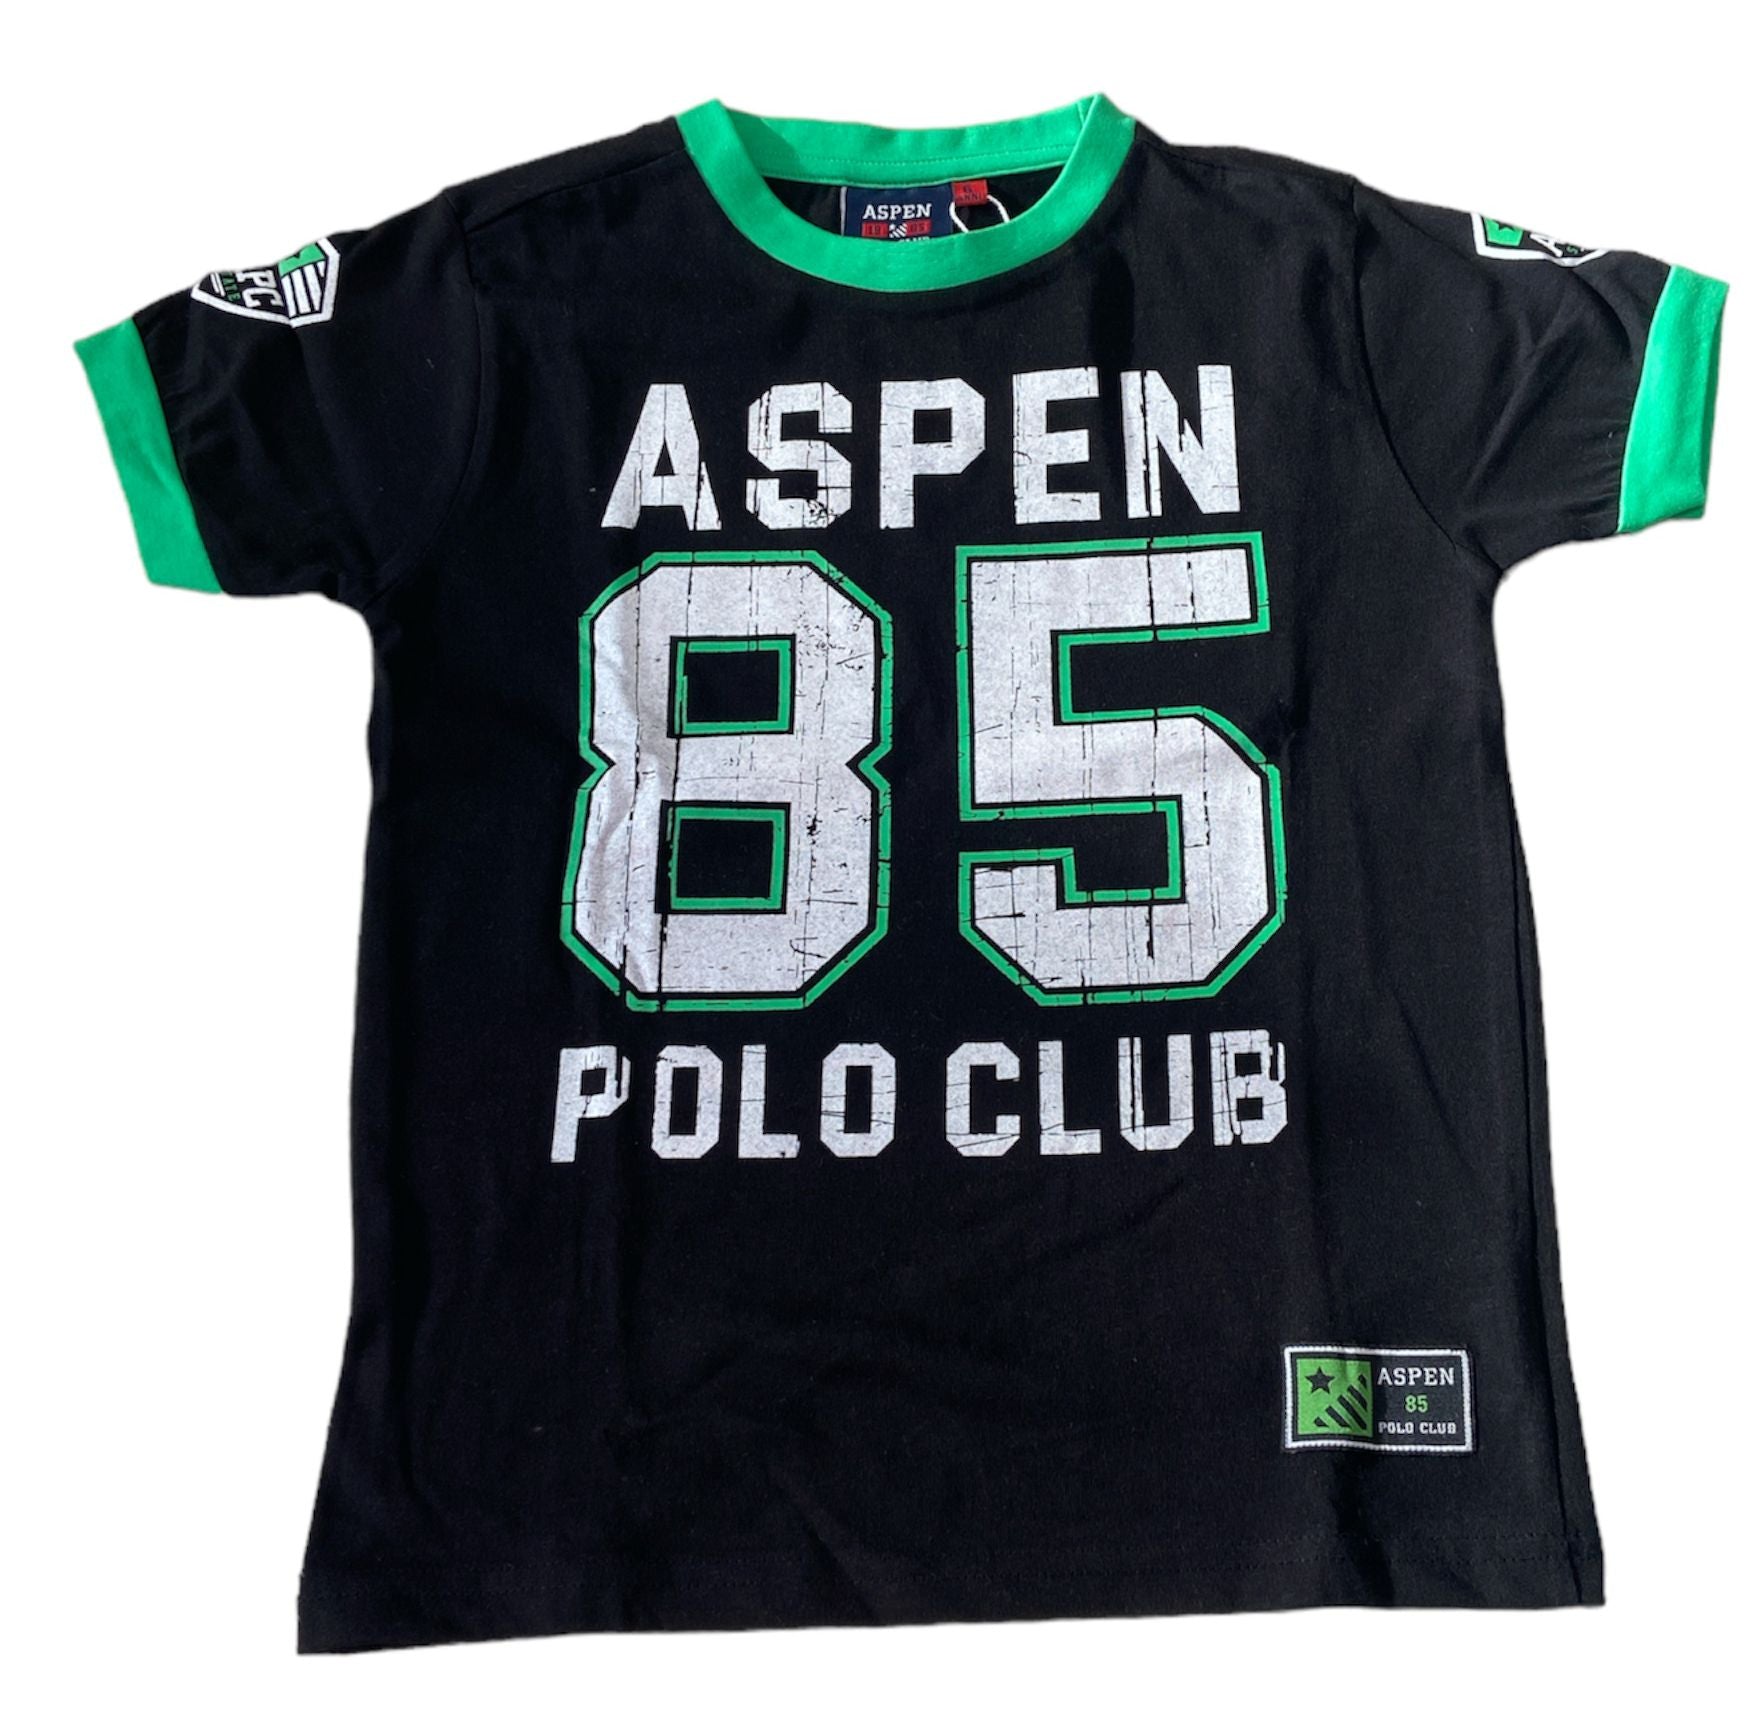 Completo Aspen Polo Club